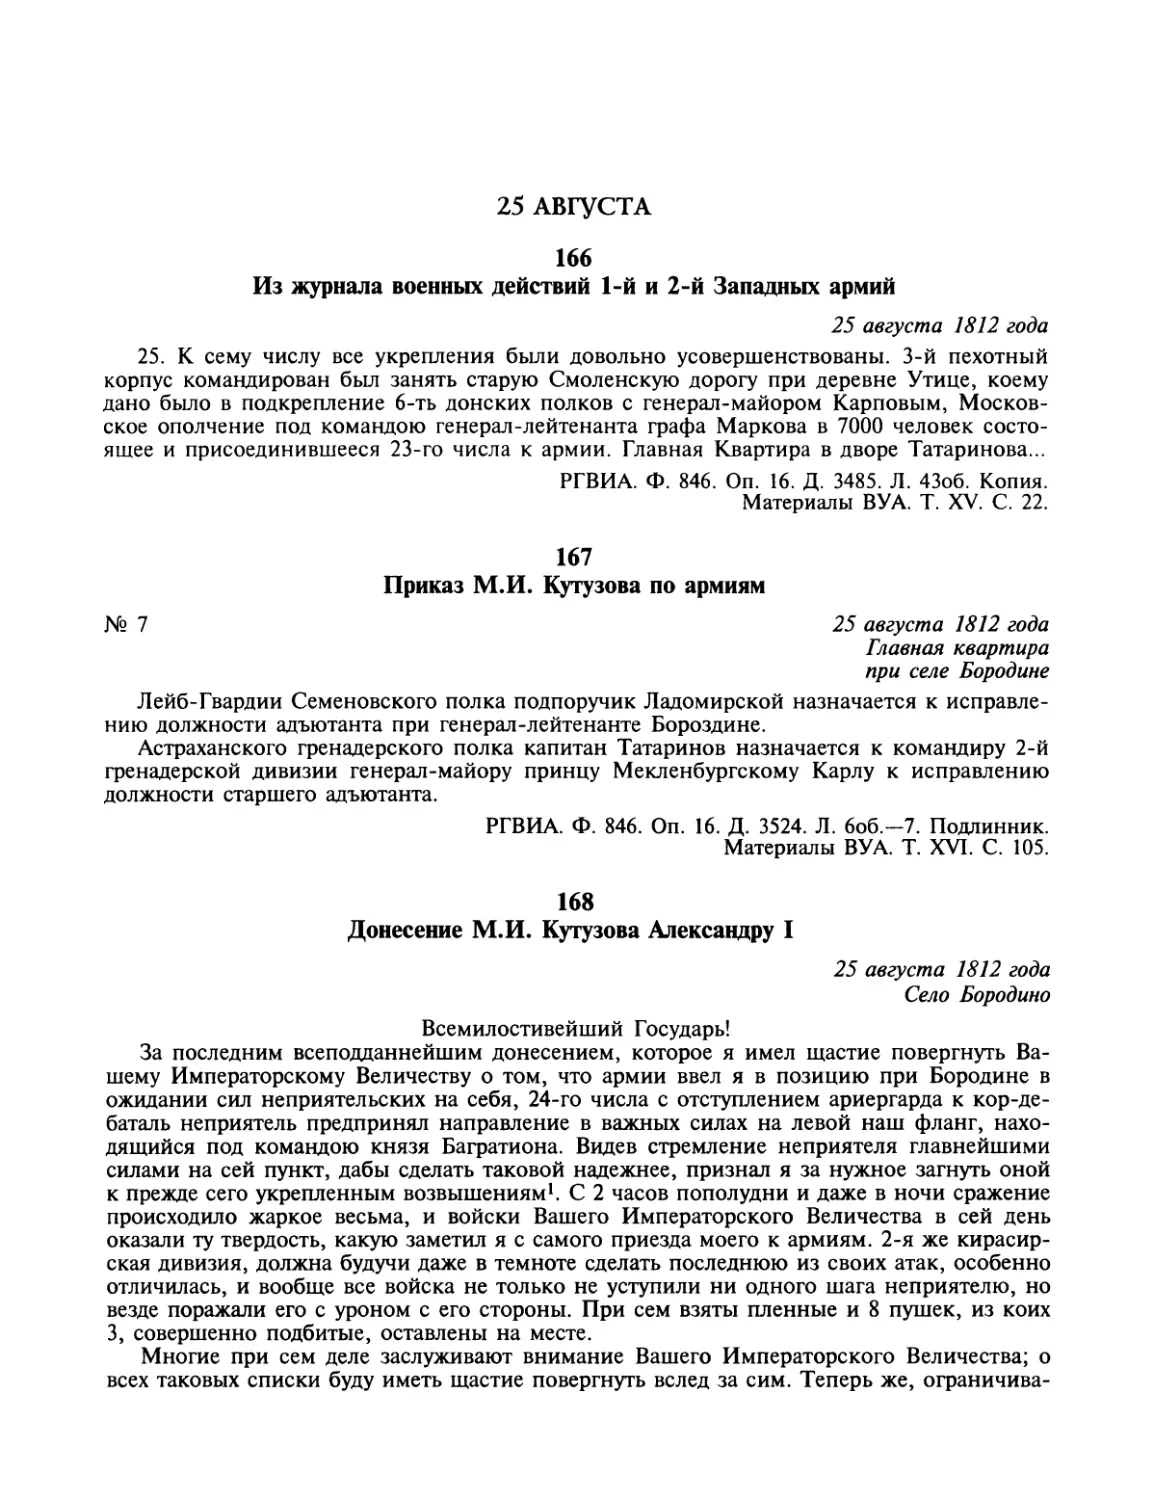 25 августа
Приказ М.И.Кутузова по армиям
Донесенйе М.И.Кутузова Александру I